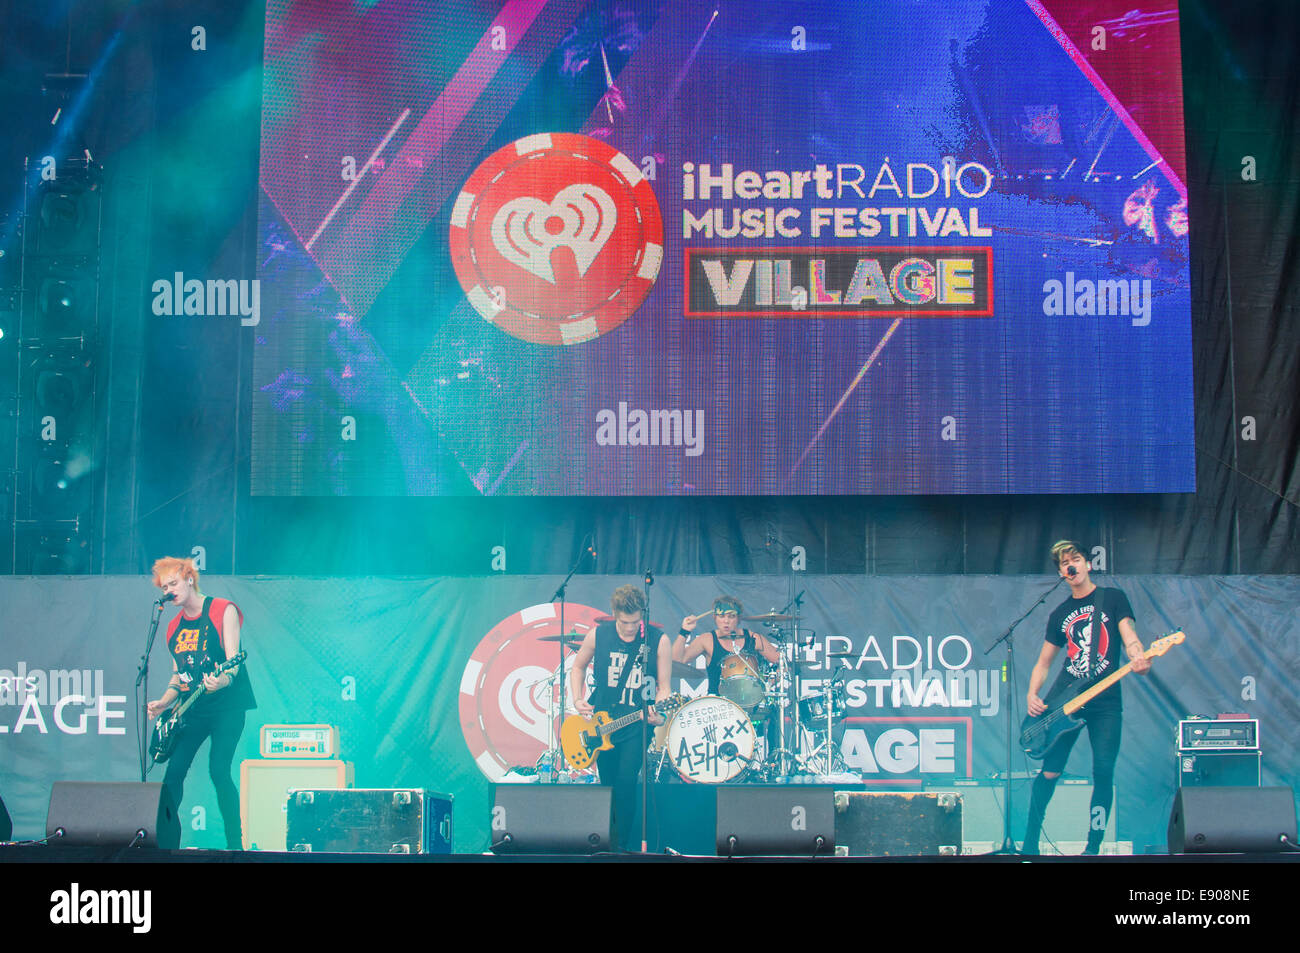 Rock Band 5 secondes de l'été joue sur la scène au iHeartRadio Music Festival 2014 Village de Las Vegas. Banque D'Images